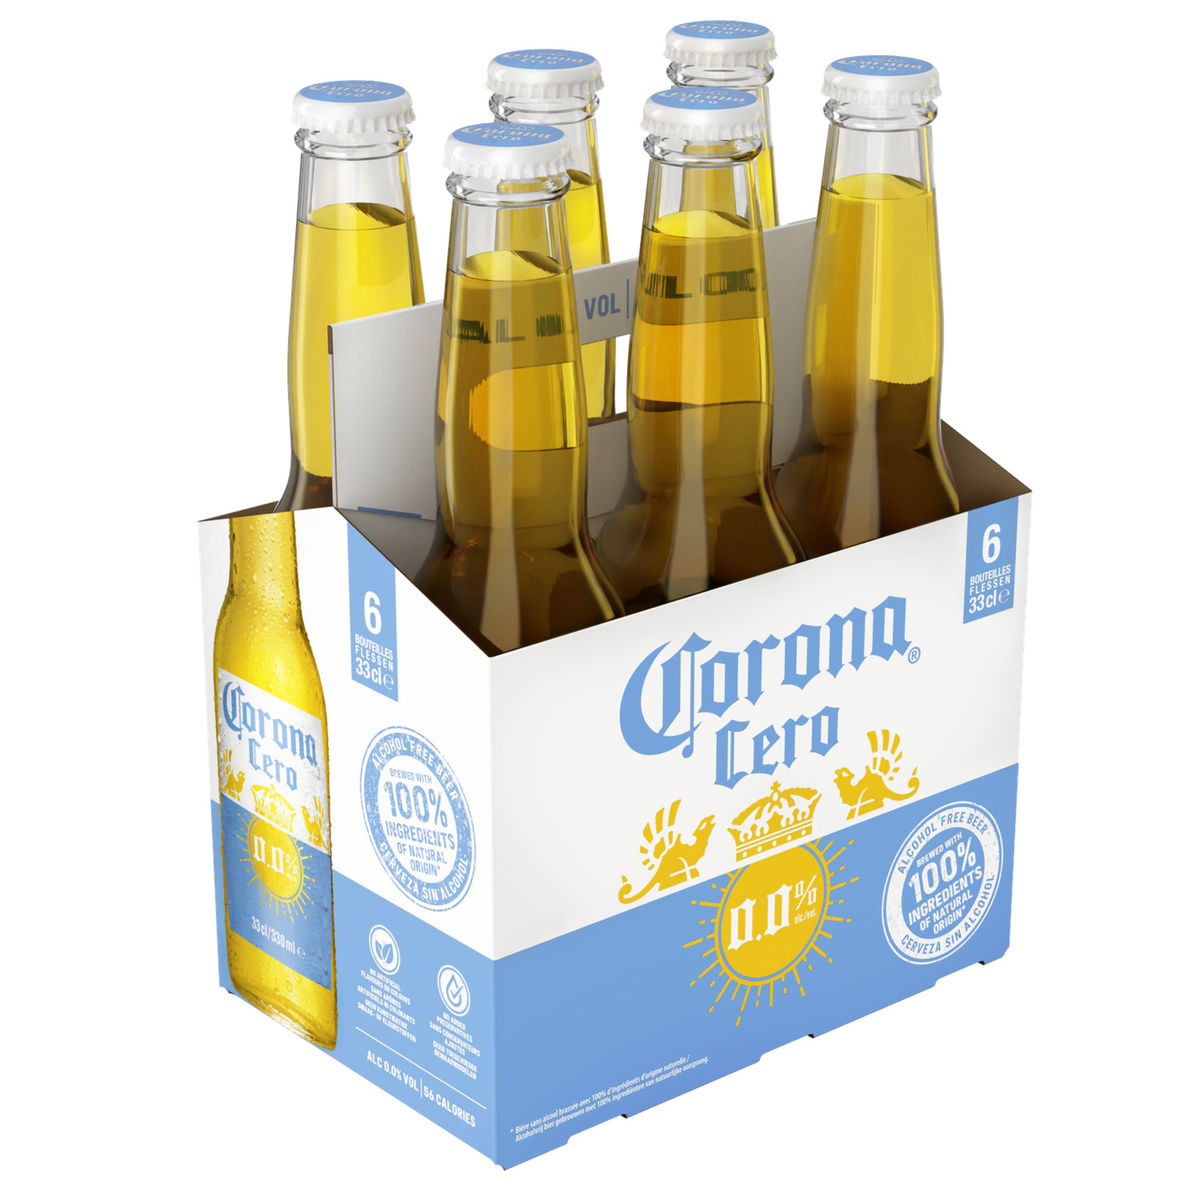 Corona Cero 0.0% Alc. Bouteilles 6 x 33 cl